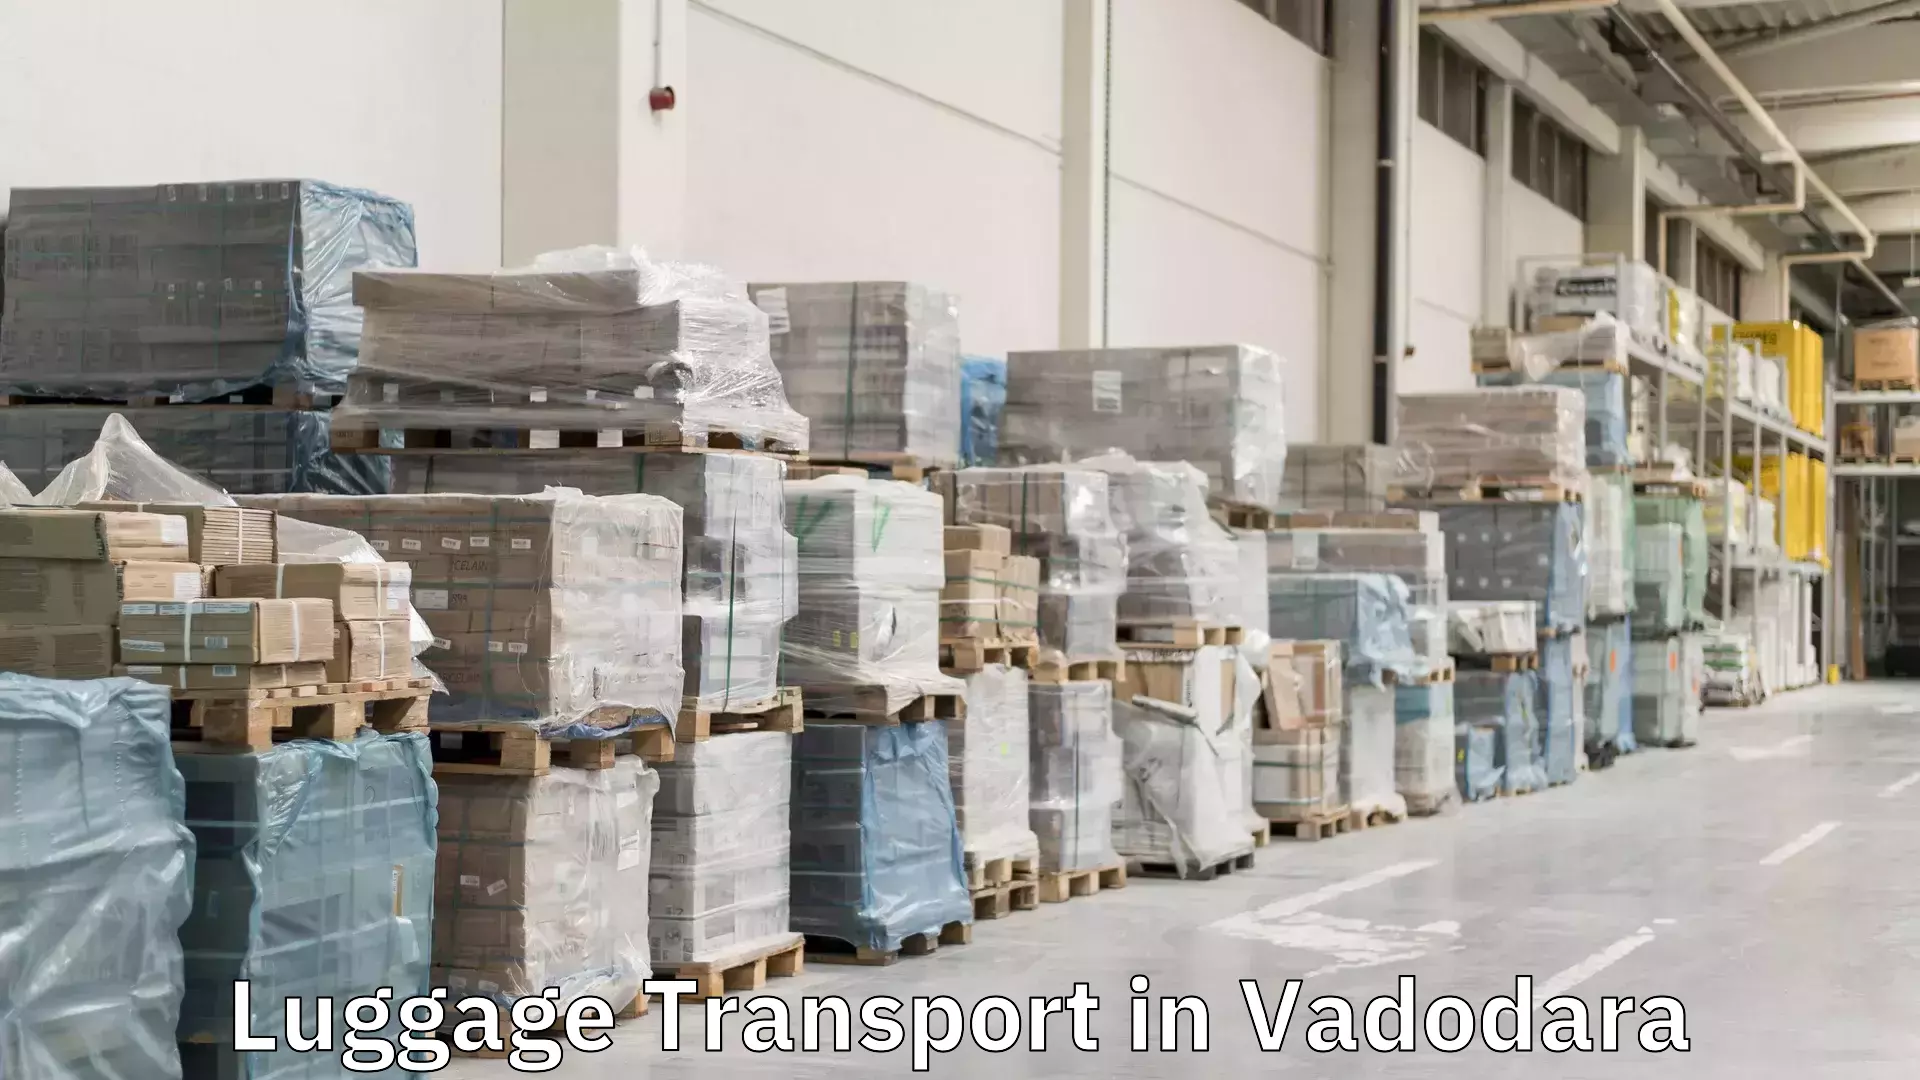 Luggage transport rates in Vadodara